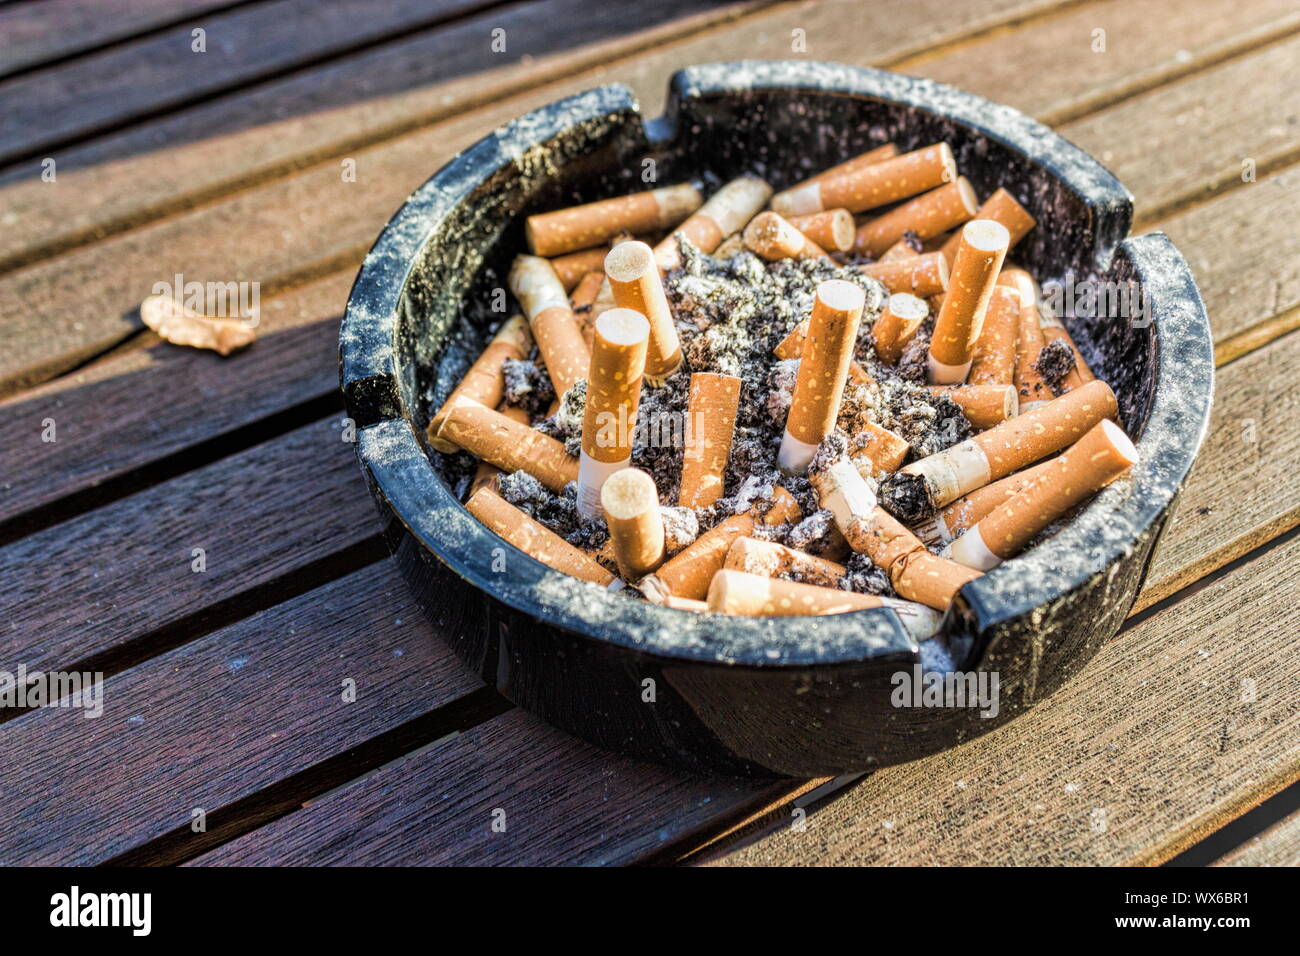 cigarette consumption Stock Photo